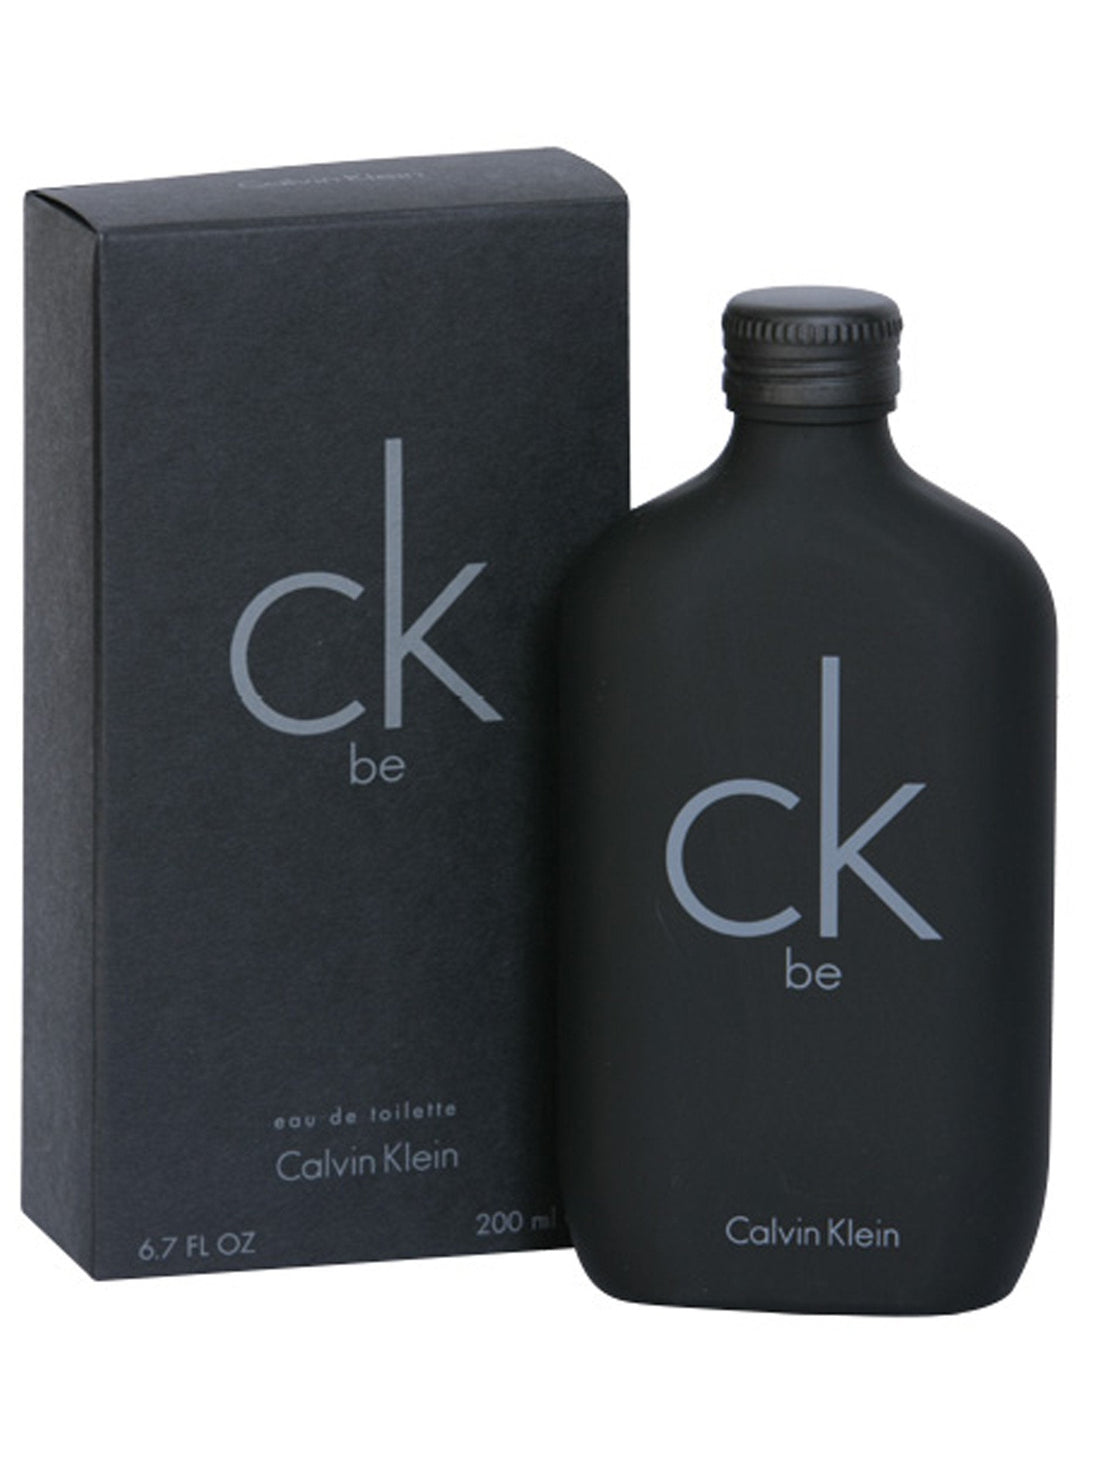 Perfume para Caballero CALVIN KLEIN * CK BE MEN 6.7 OZ EDT SPRAY